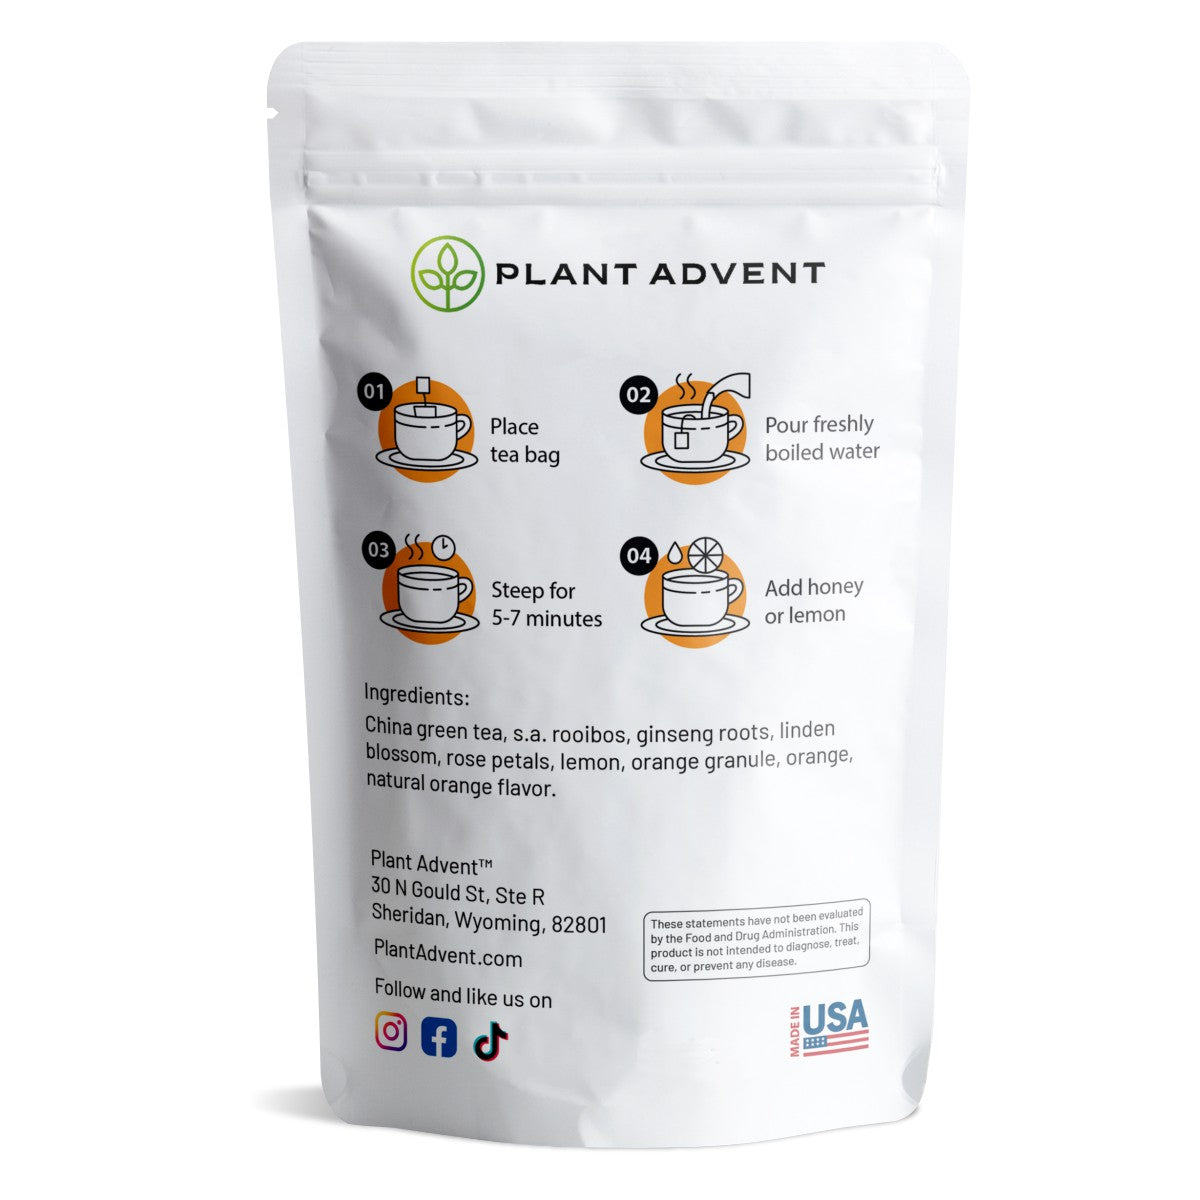 Plant Advent Premium Morning Boost Tea